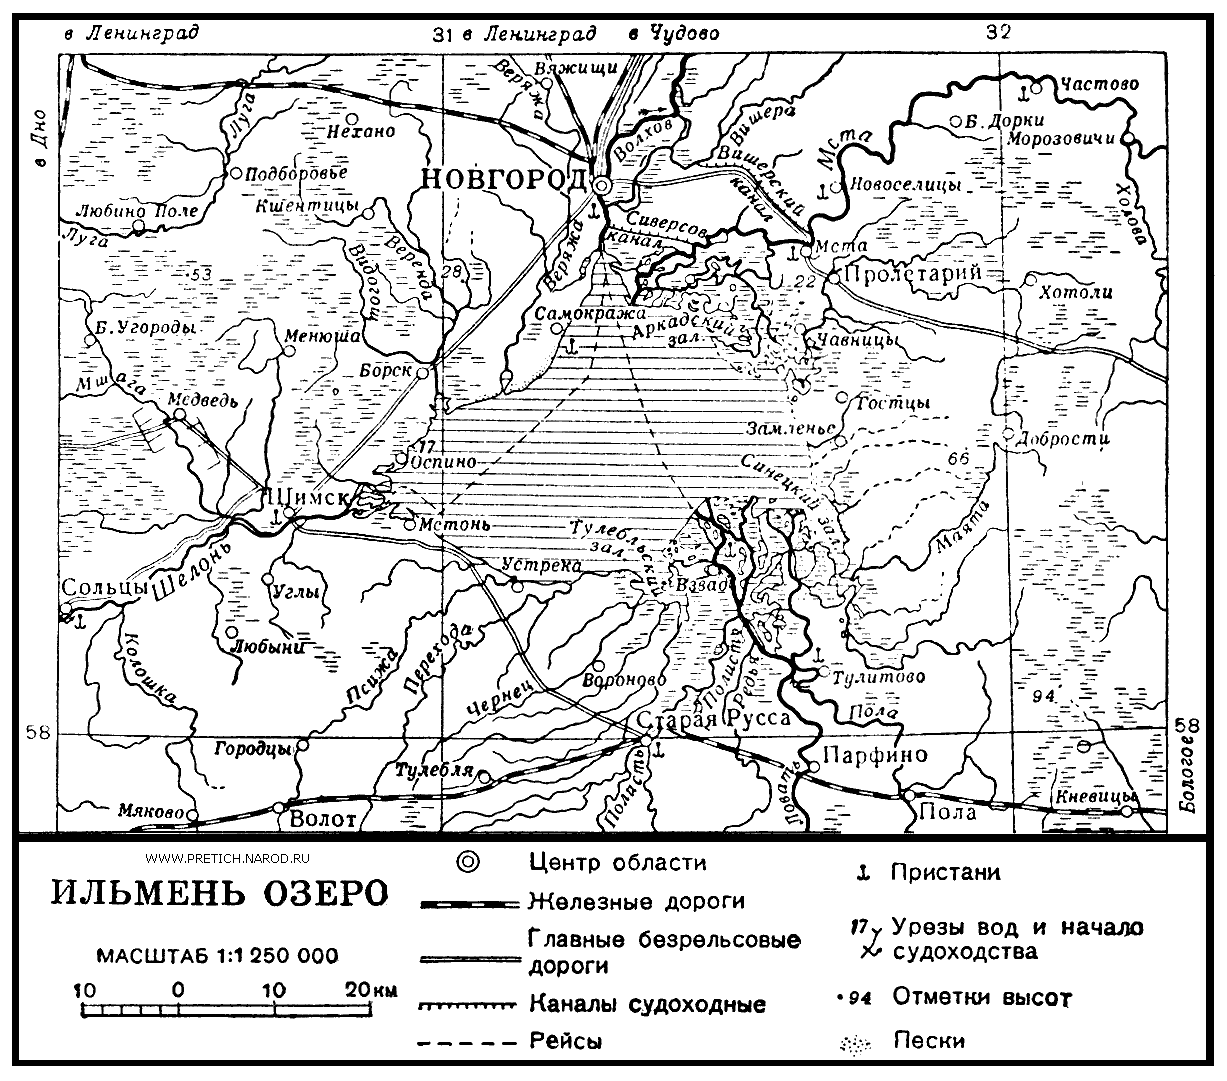 Ильмень озеро и Новгород - карта, 40-е годы